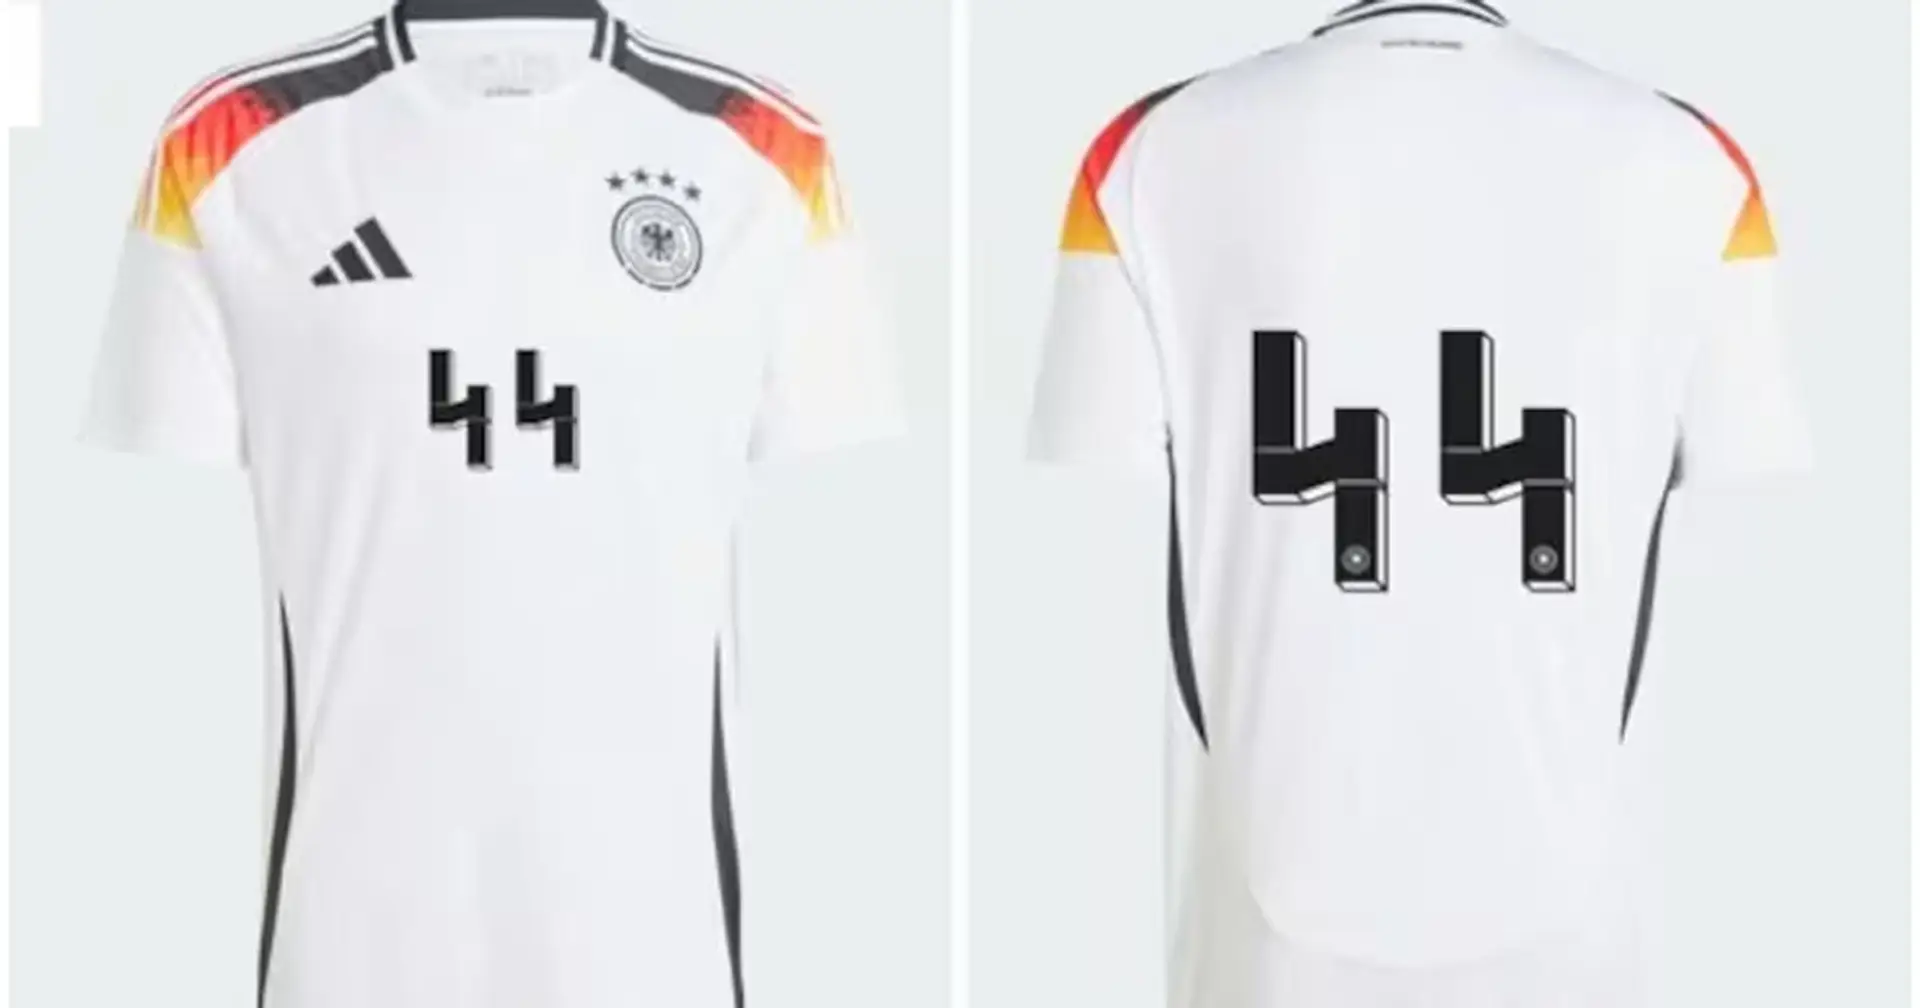 Dopo le critiche Adidas ritira la maglia della Germania No 44; secondo alcuni ricordava il simbolo delle SS naziste 